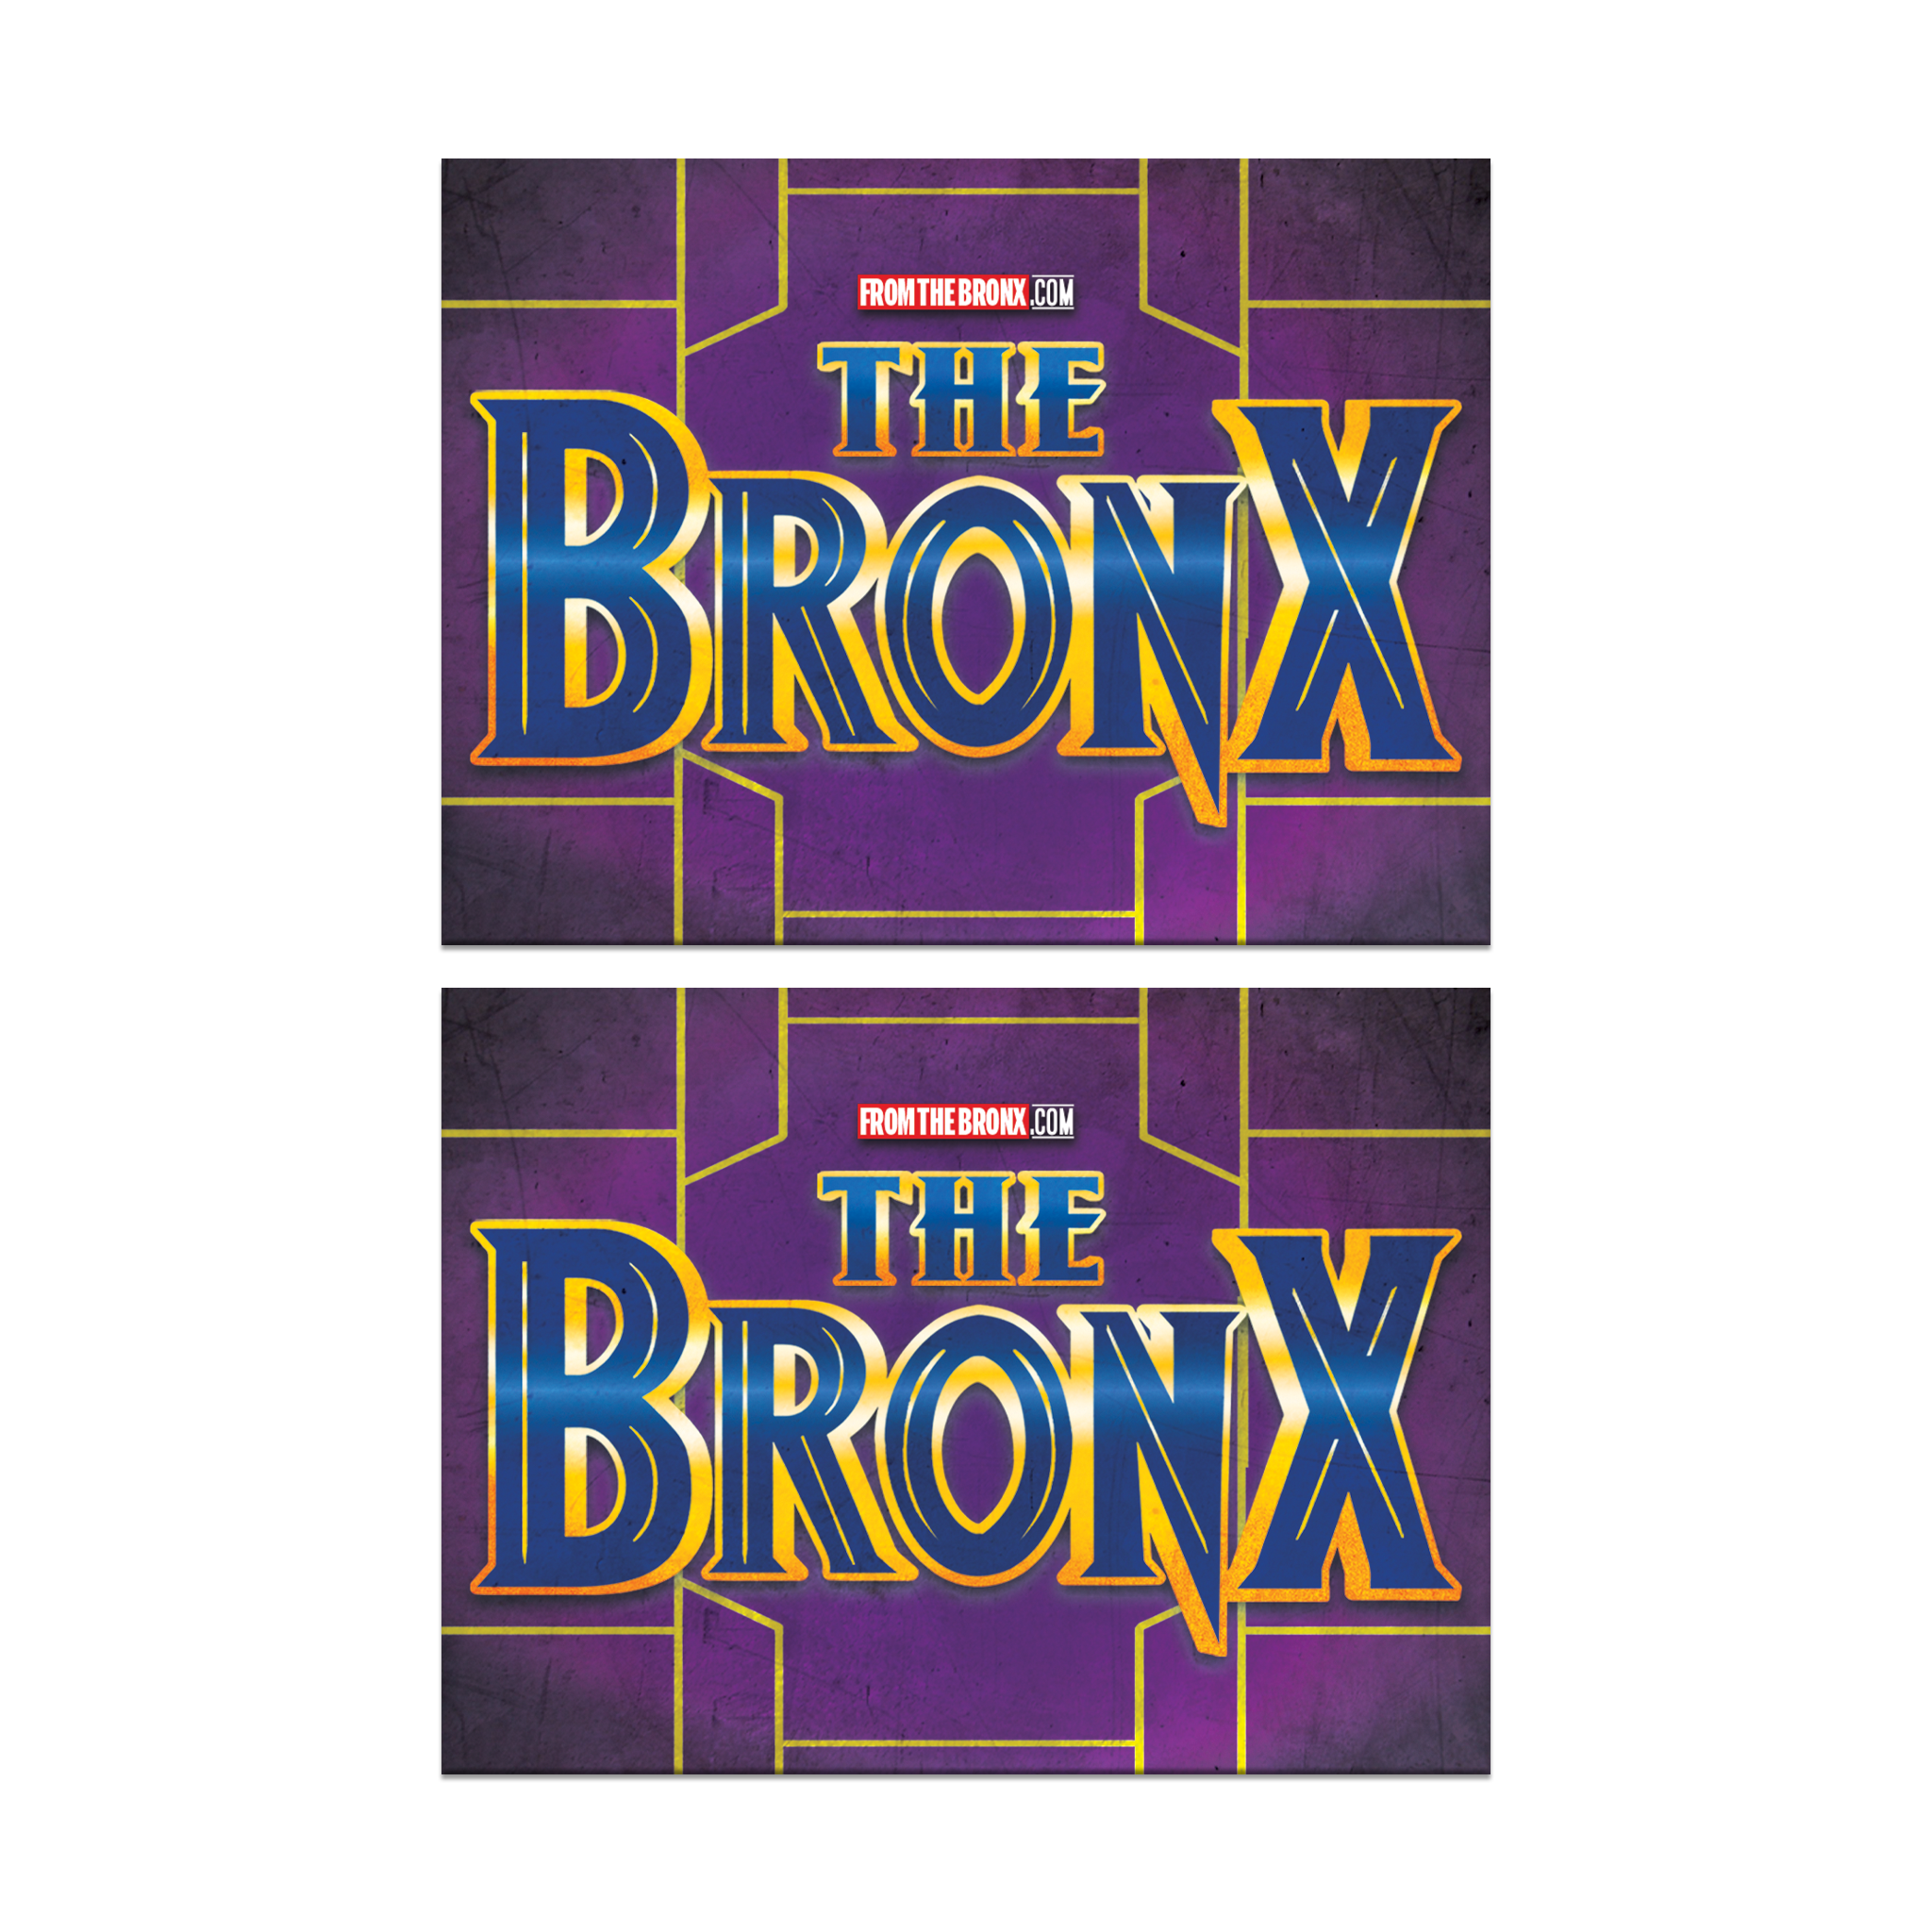 Bronx Forever Sticker 2-Pack